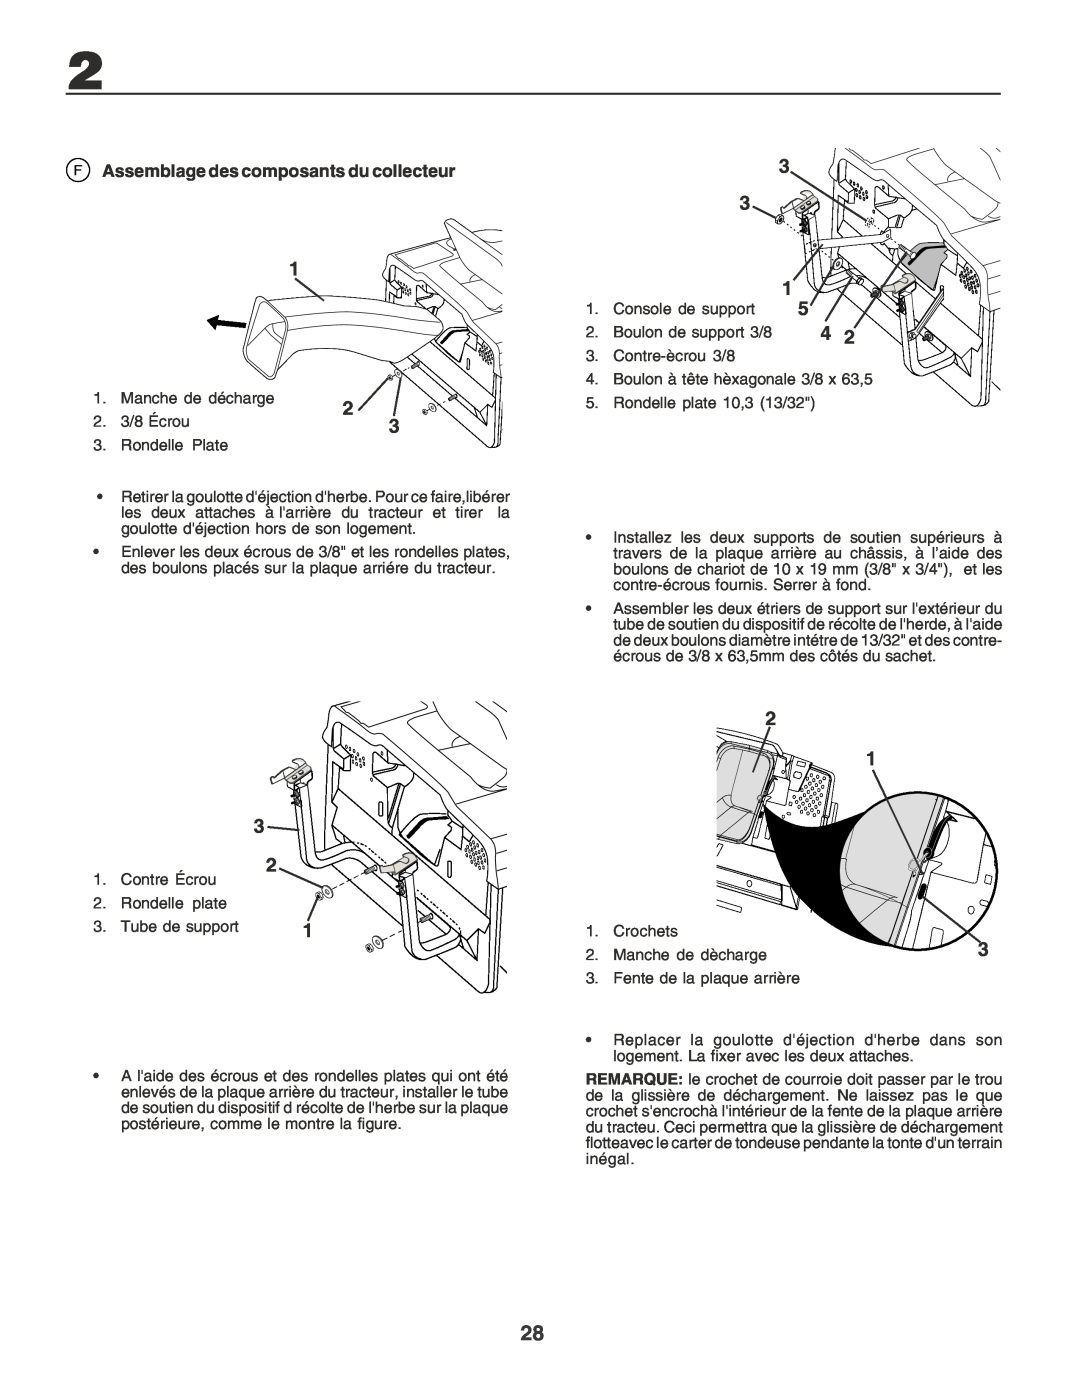 Husqvarna CTH170 instruction manual F Assemblage des composants du collecteur 